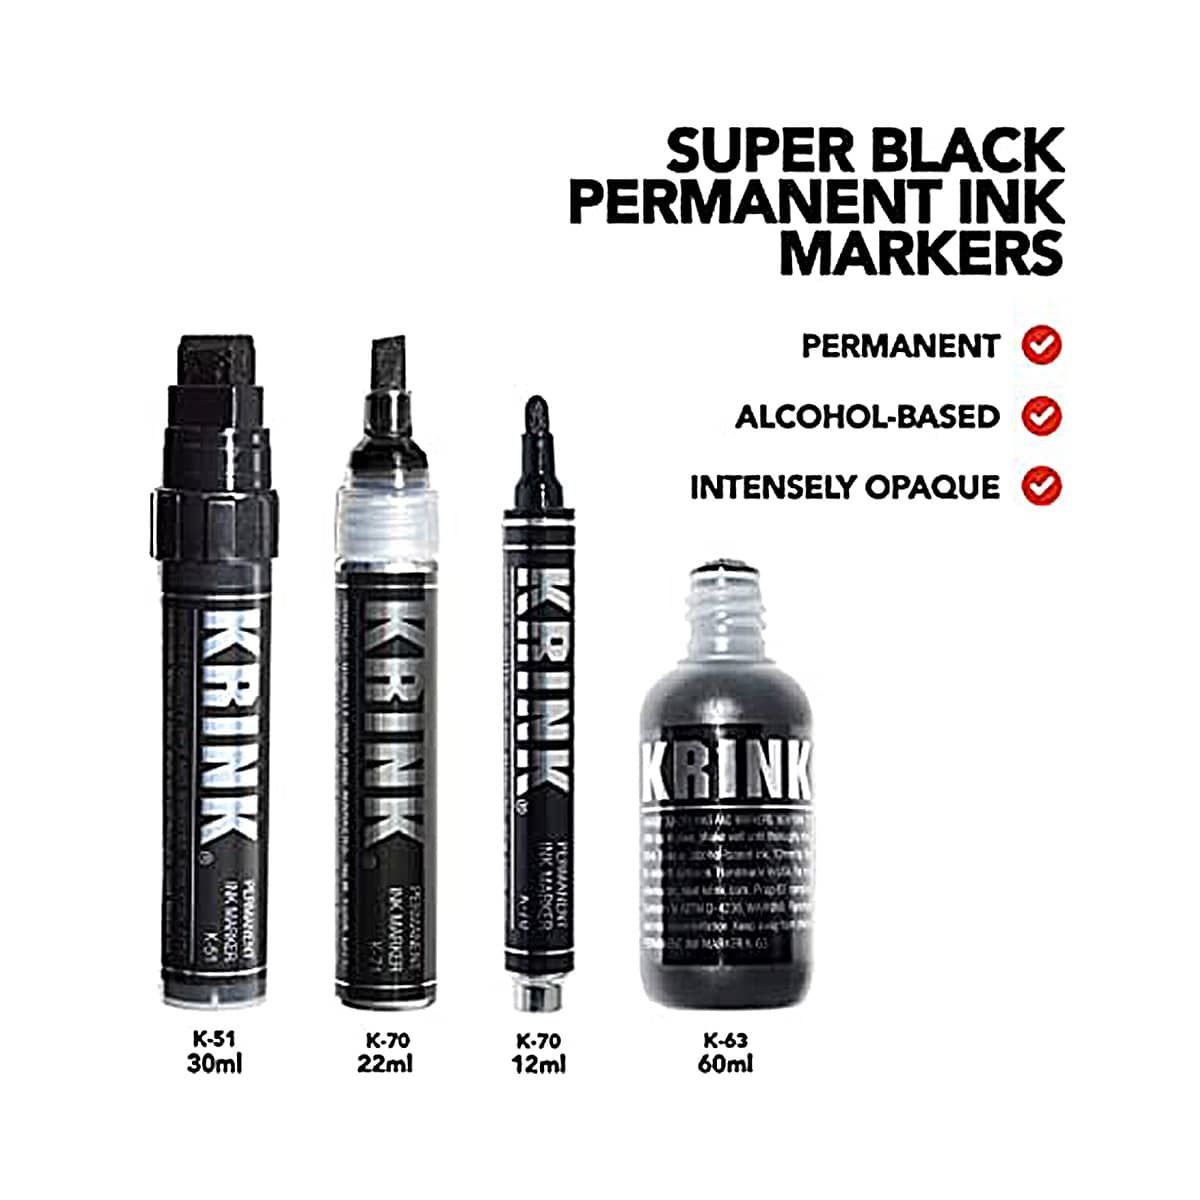 Krink Permanent Alcohol Ink Marker Box Set of 4 Super Black